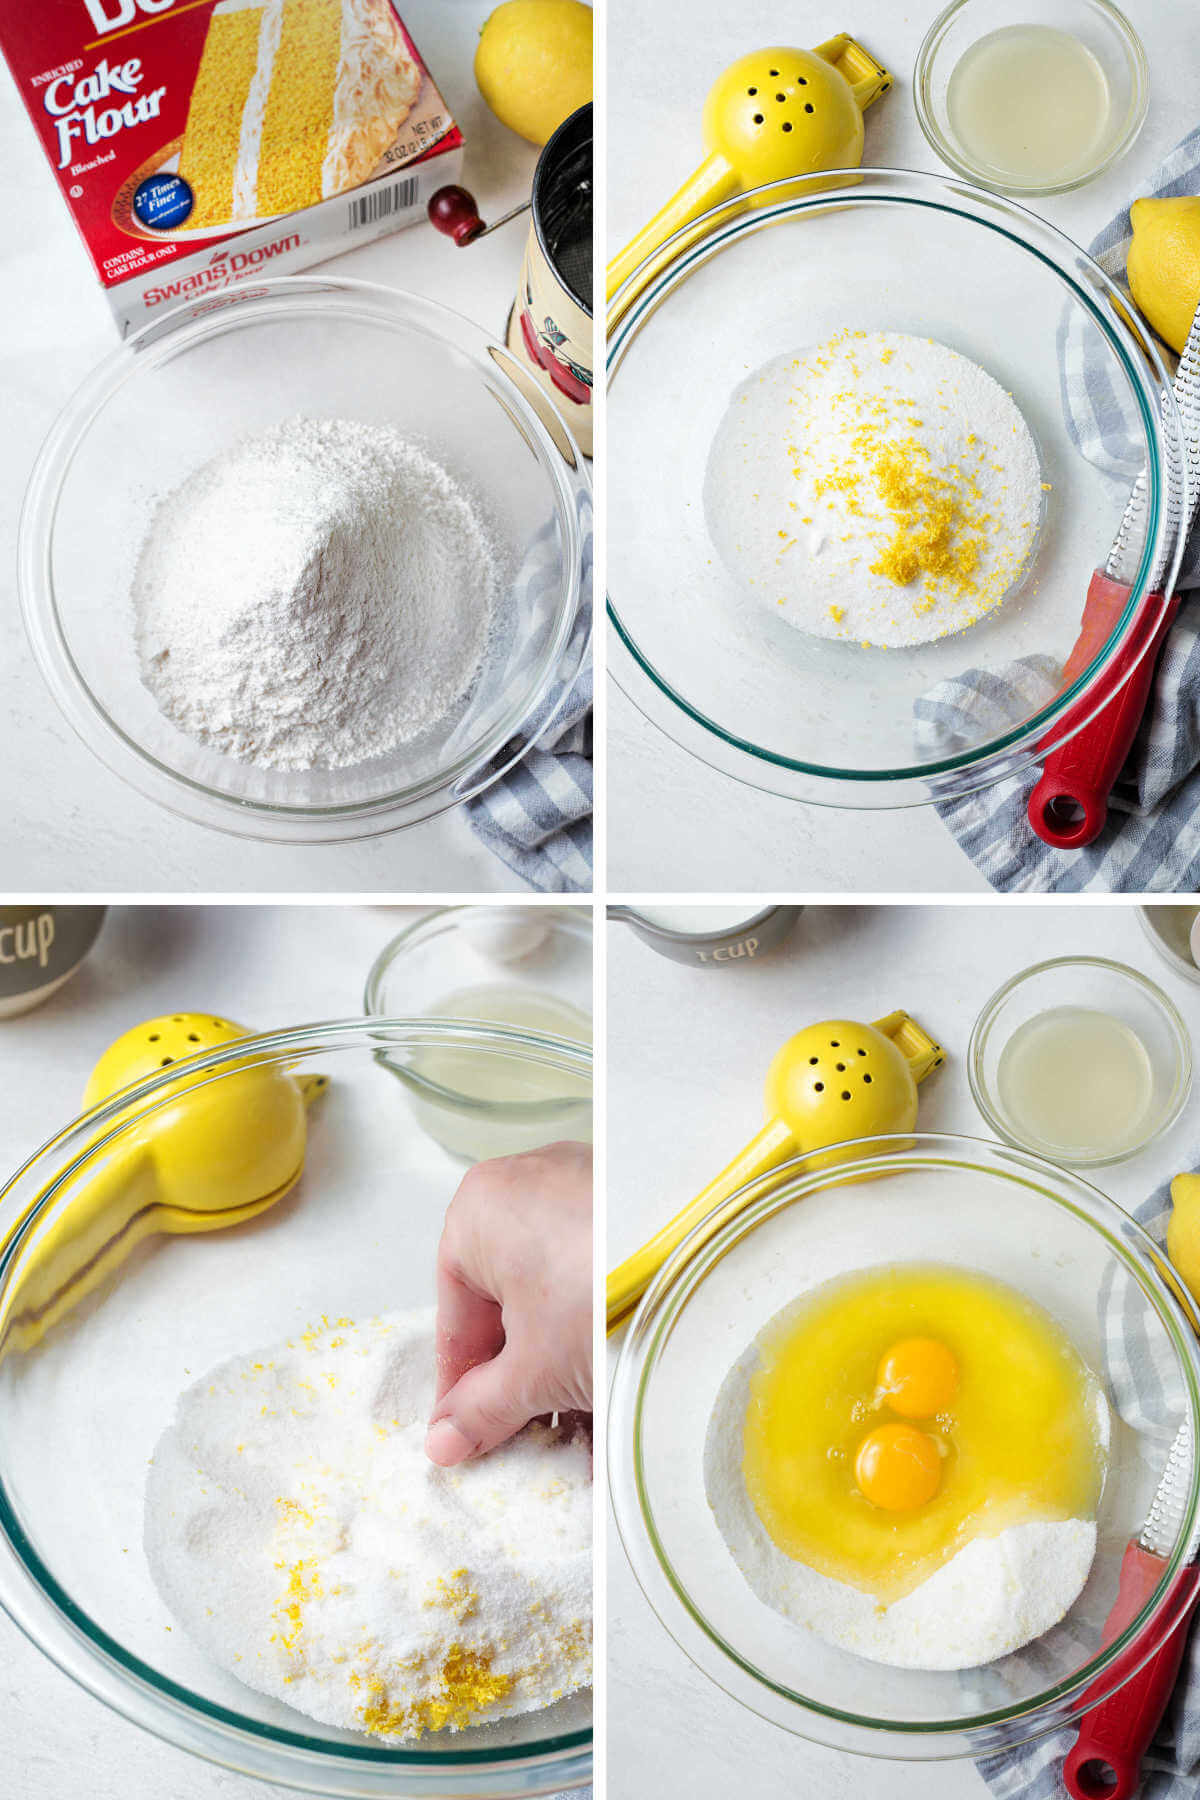 sifting cake flour and zesting lemon for lemon poppyseed muffins.